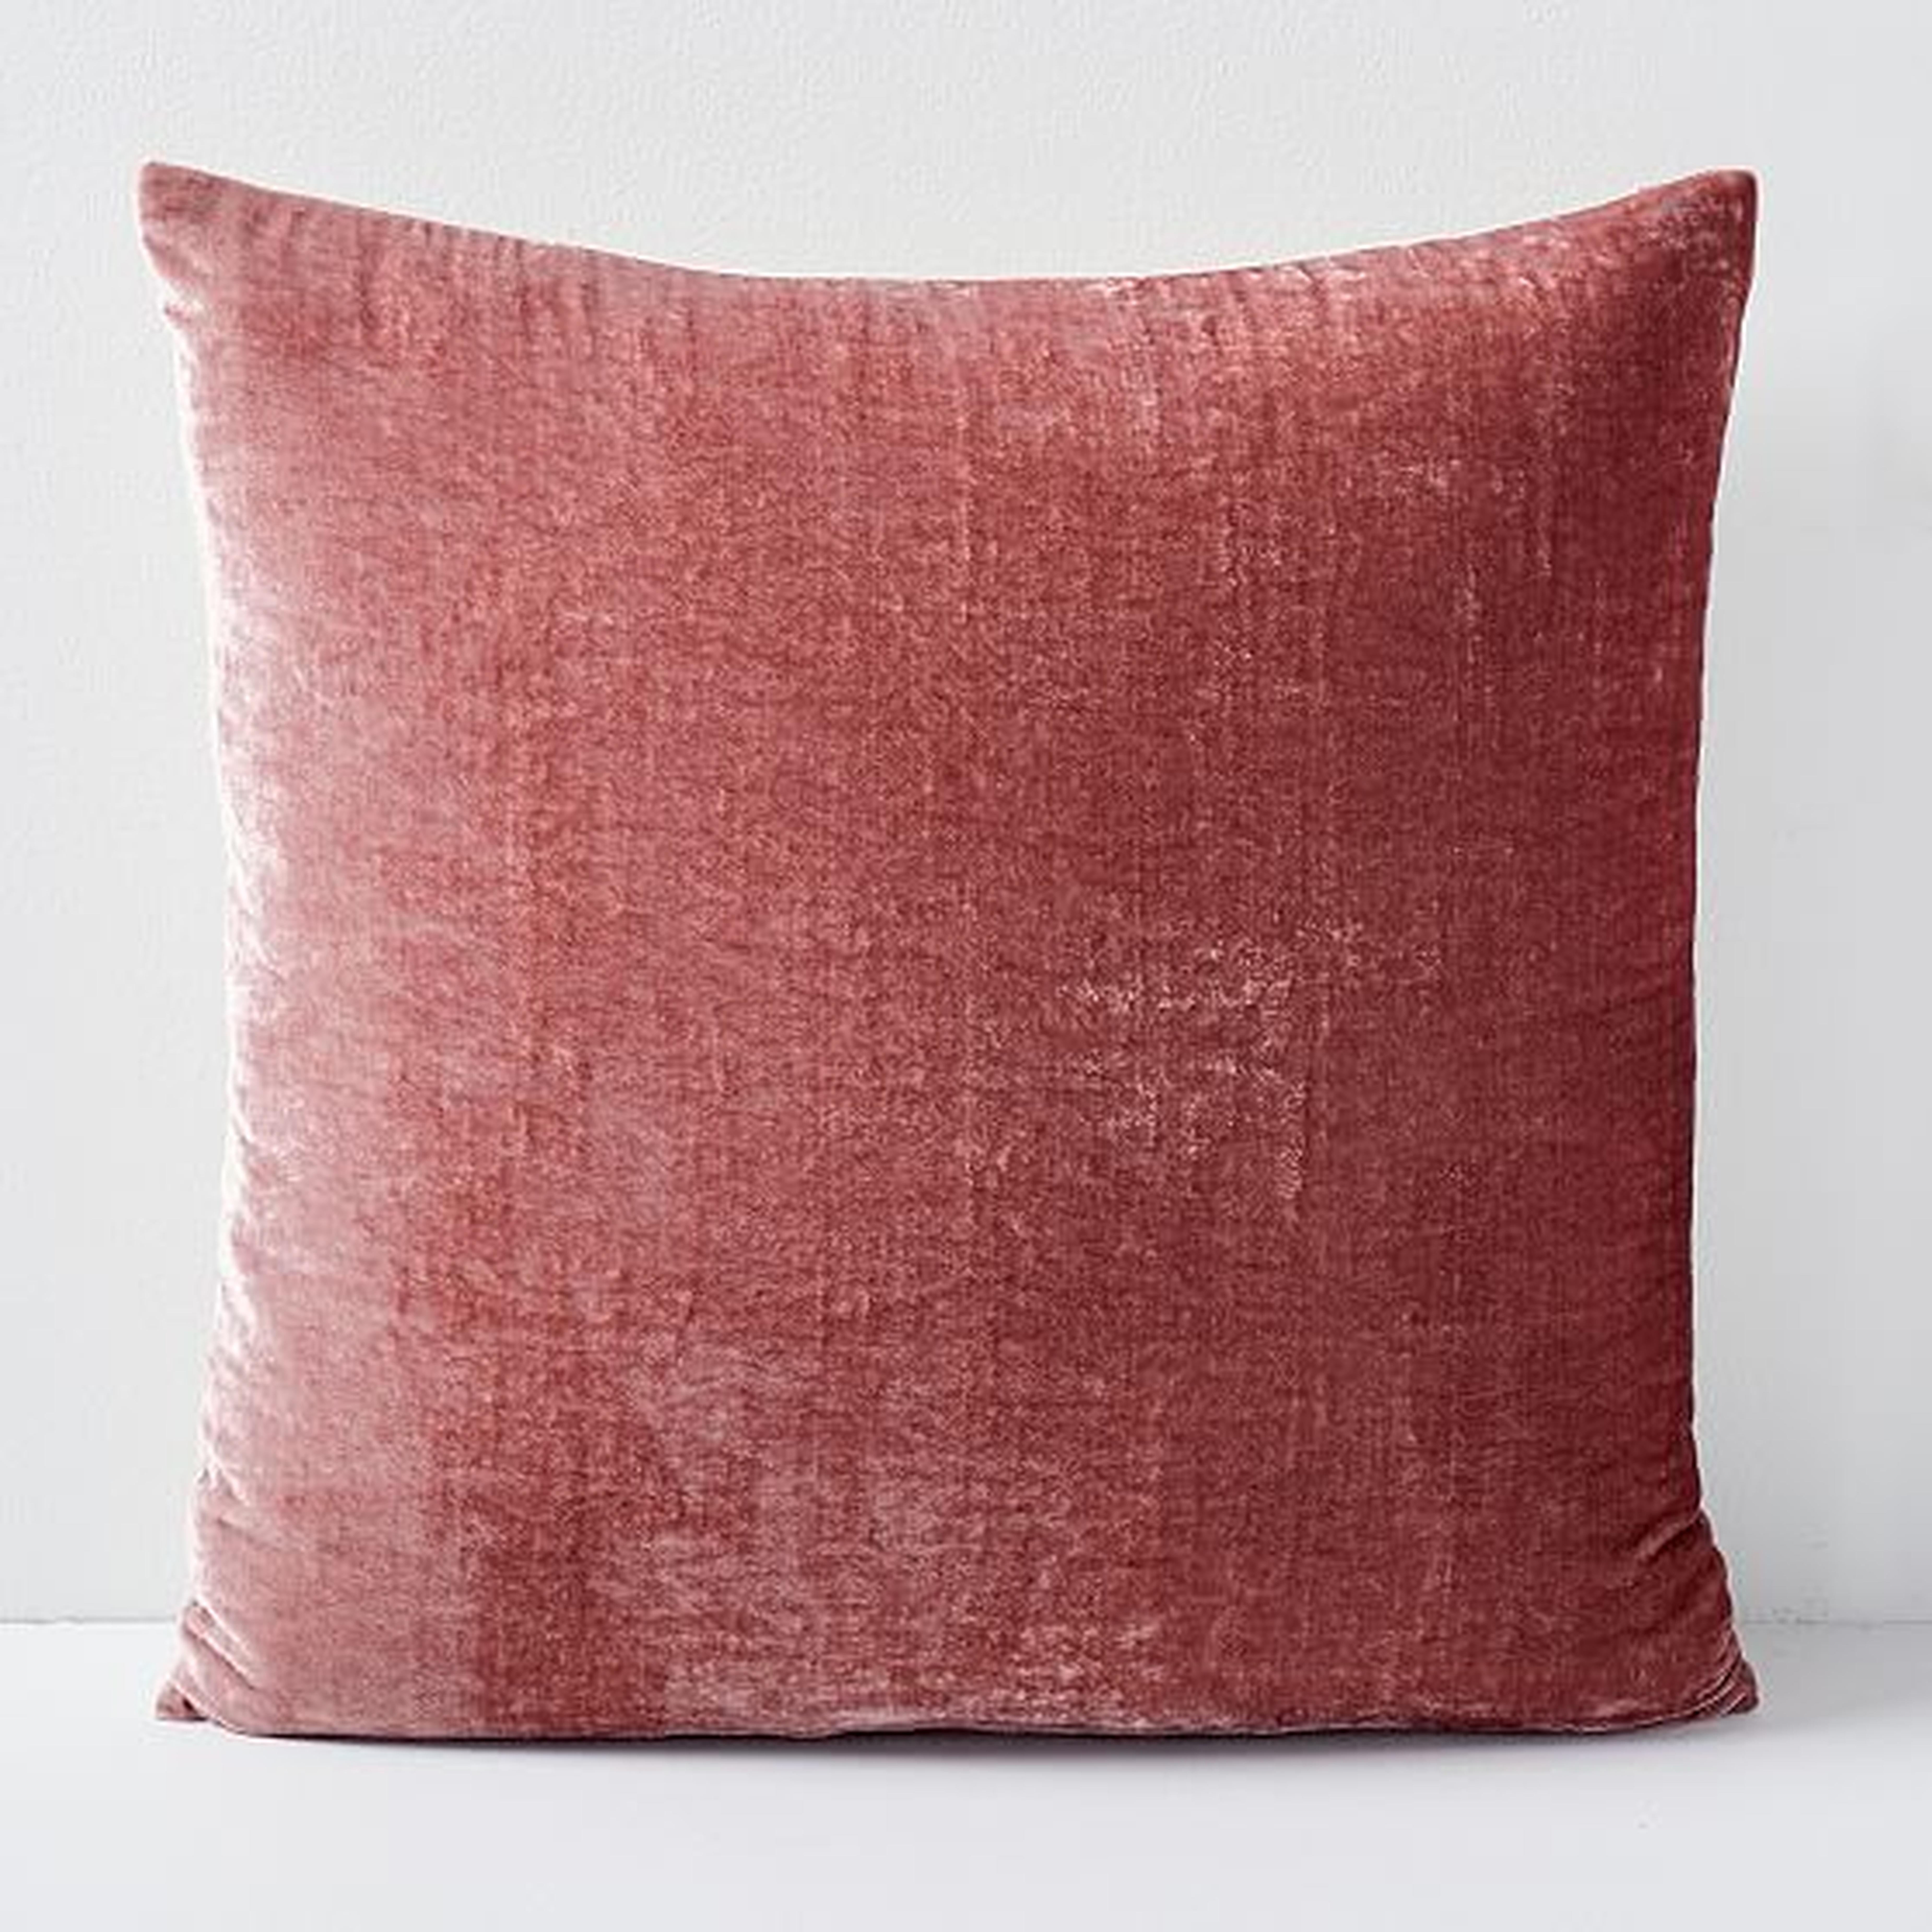 Lush Velvet Pillow Cover, Pink Grapefruit, 18"x18" - West Elm